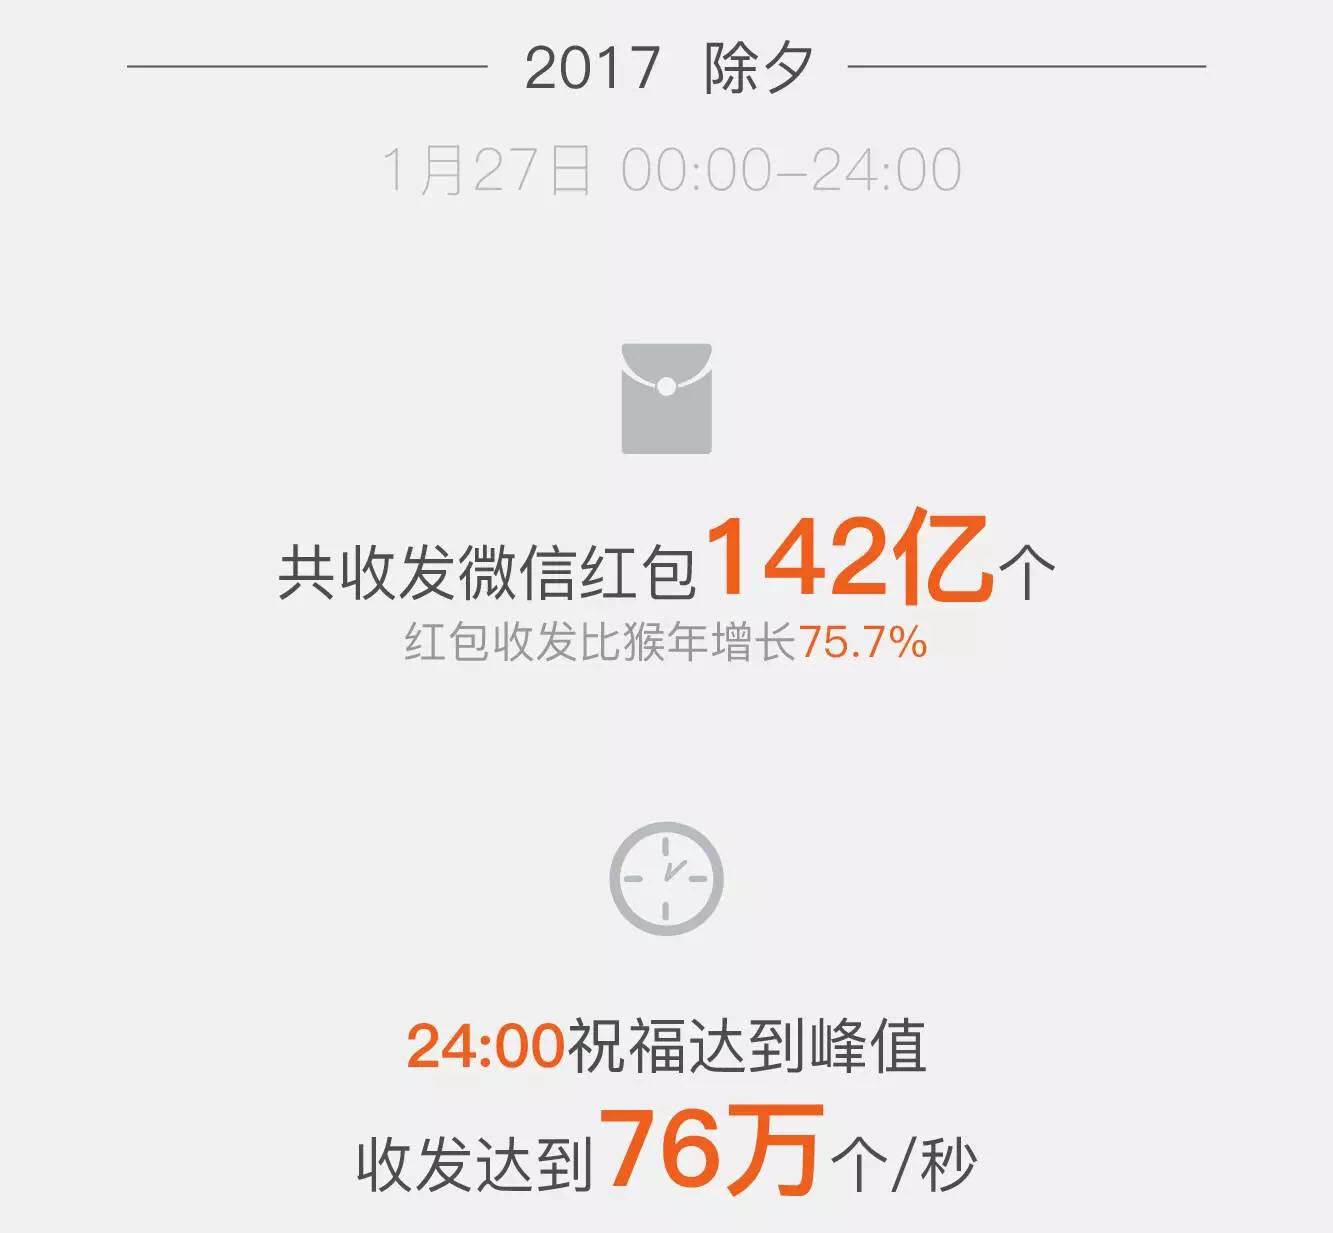 2017年除夕微信用户共收发142亿个红包 比去年增长75.7%